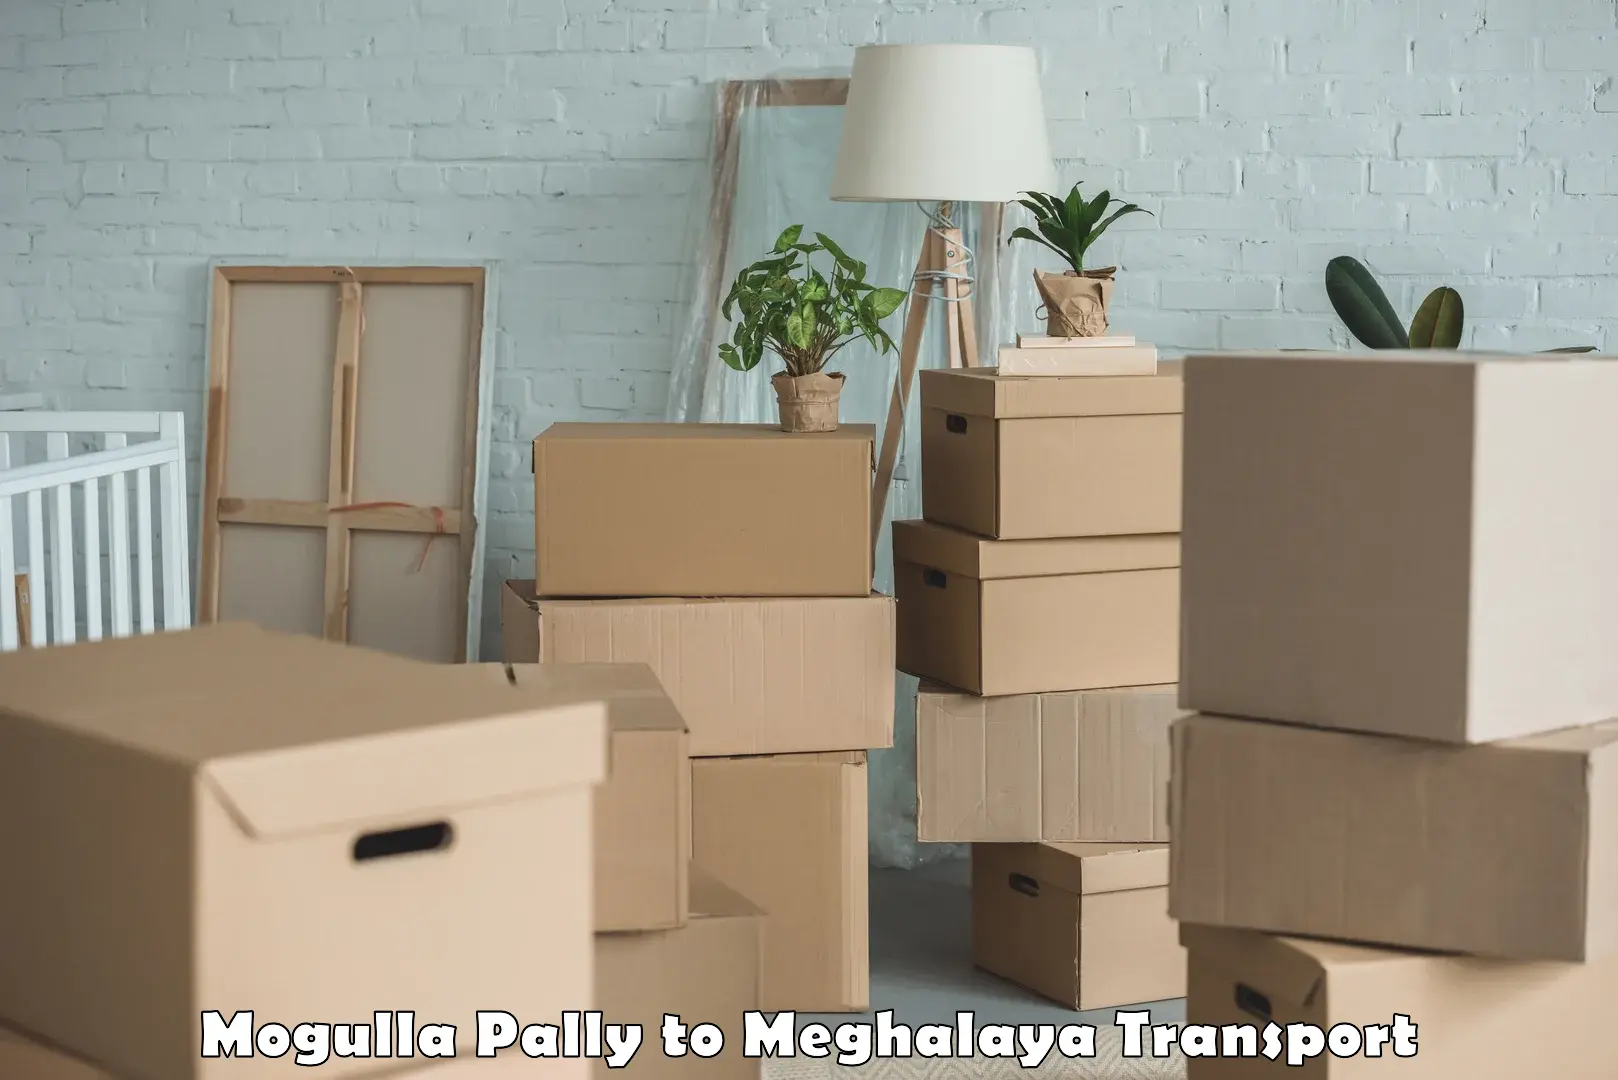 Daily parcel service transport Mogulla Pally to NIT Meghalaya